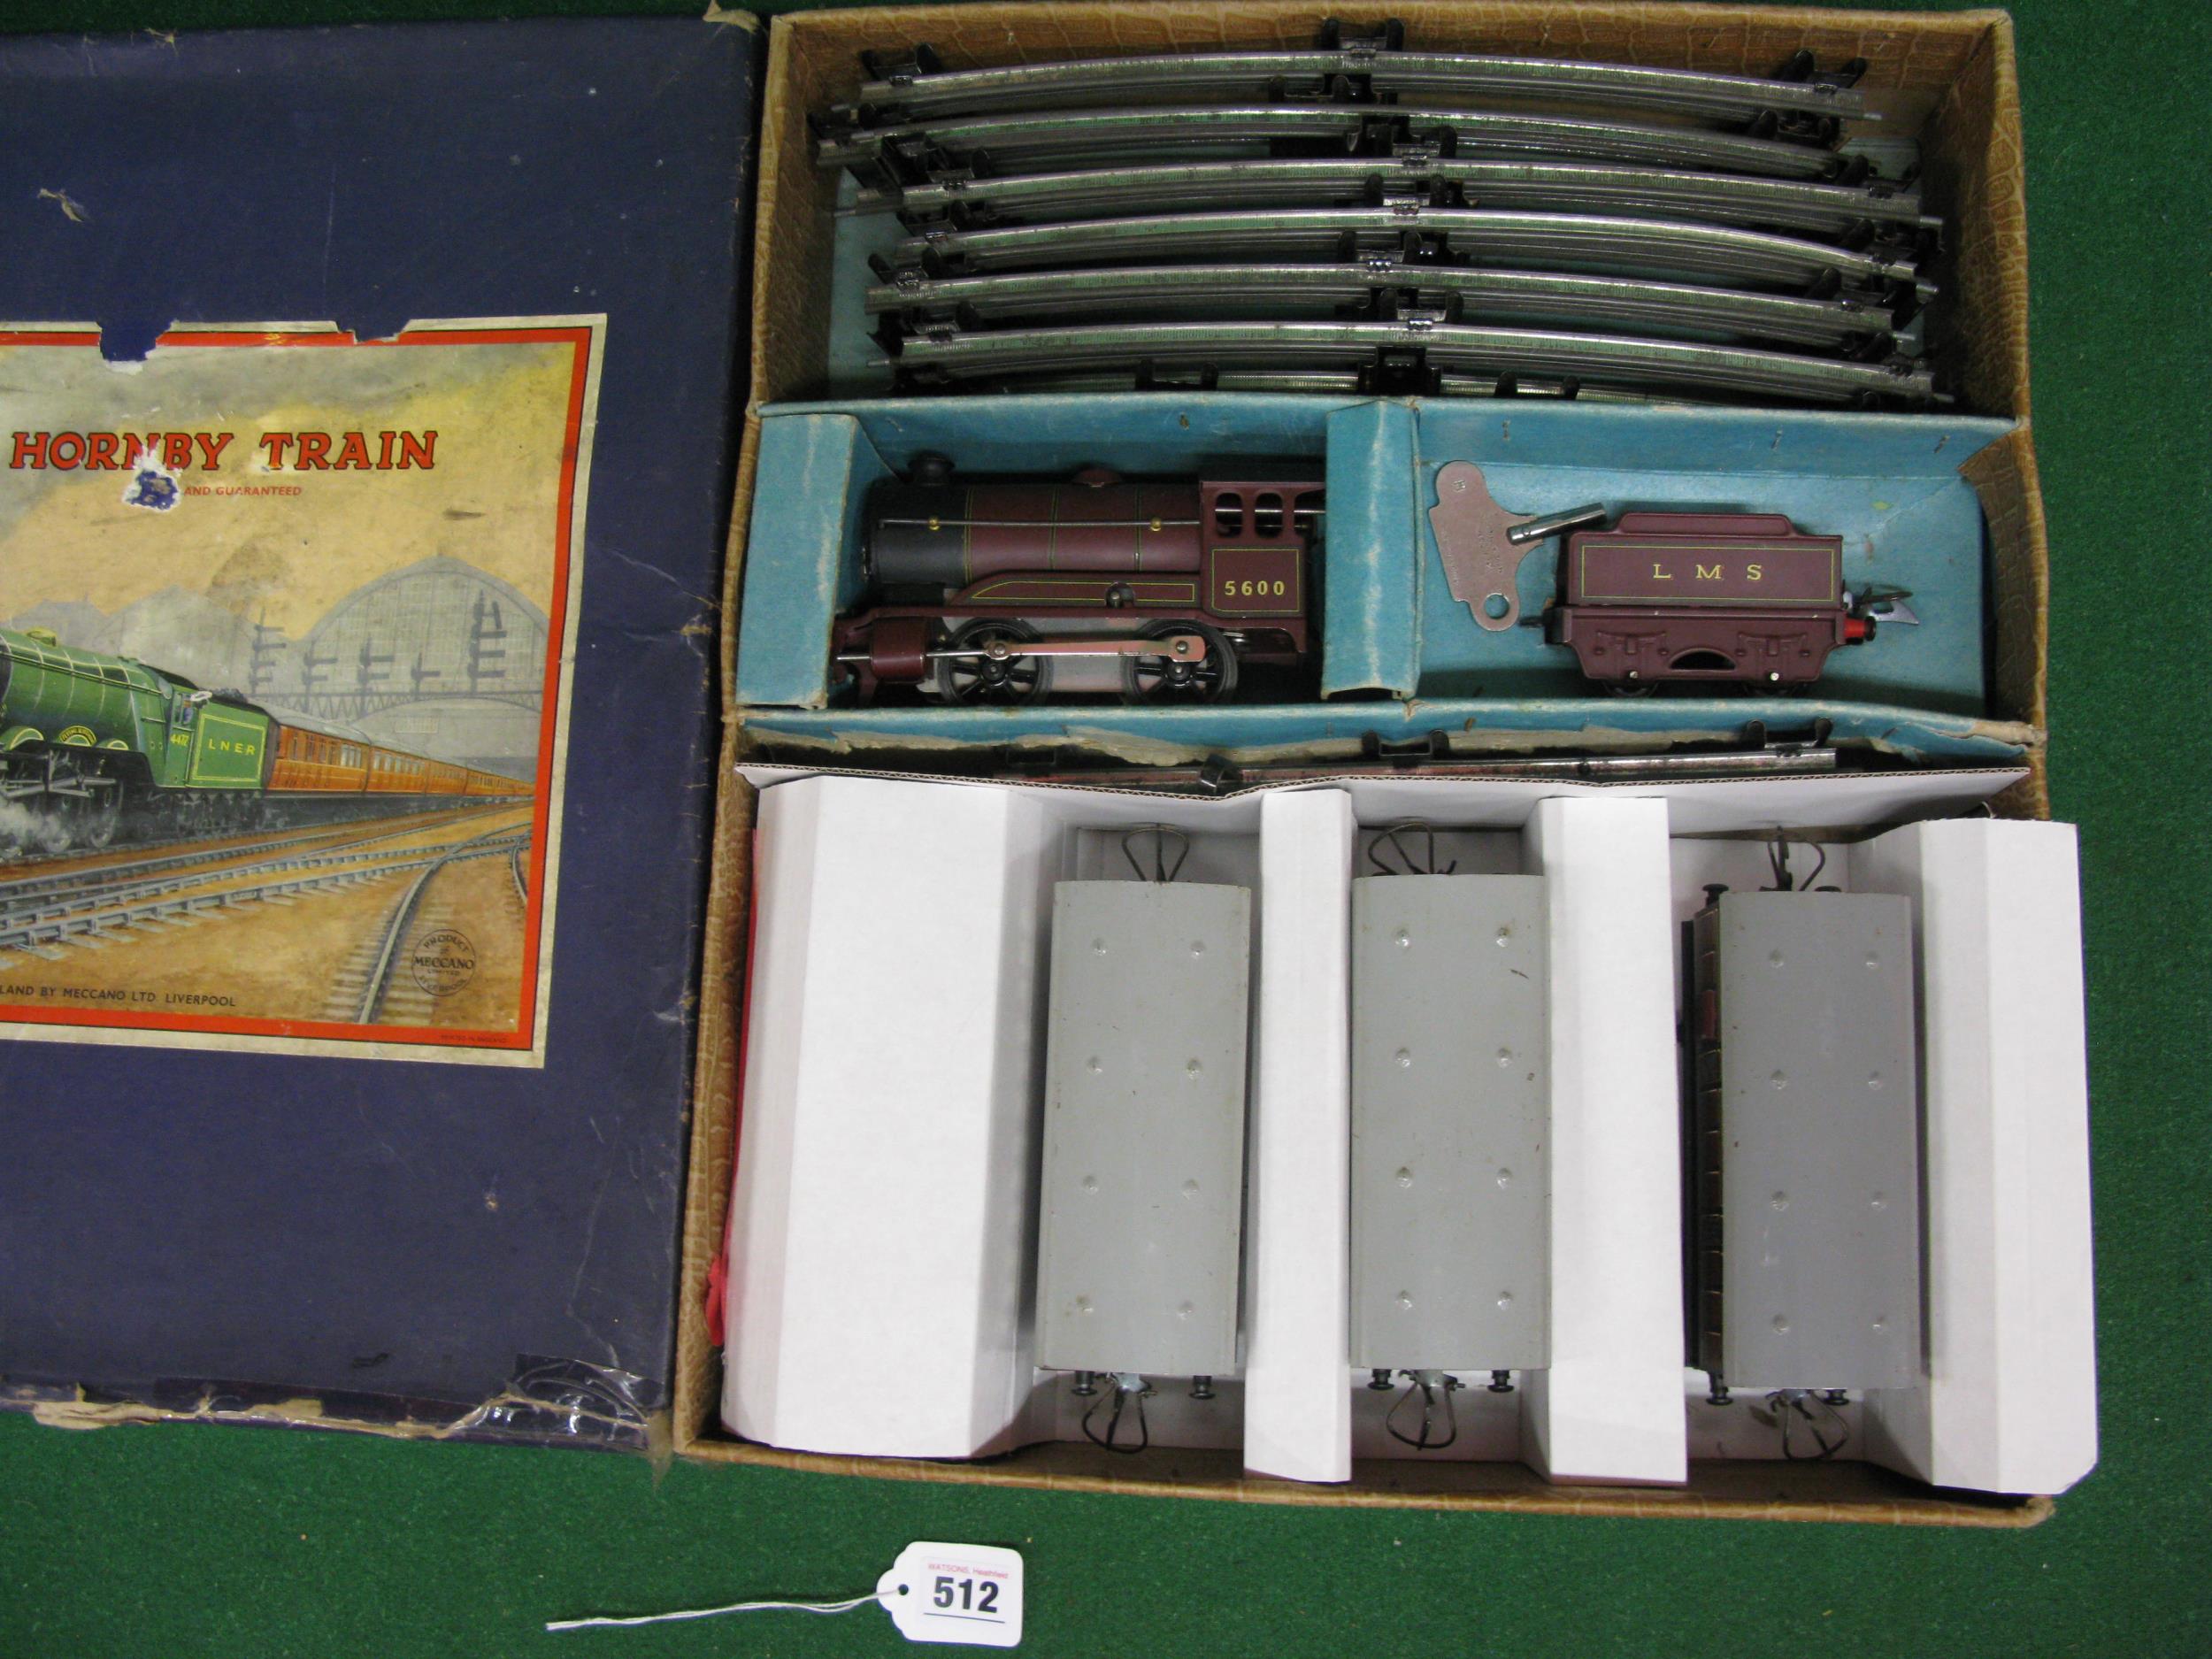 Post war boxed Hornby O gauge clockwork train set to comprise: 501 Type 0-4-0 tender locomotive